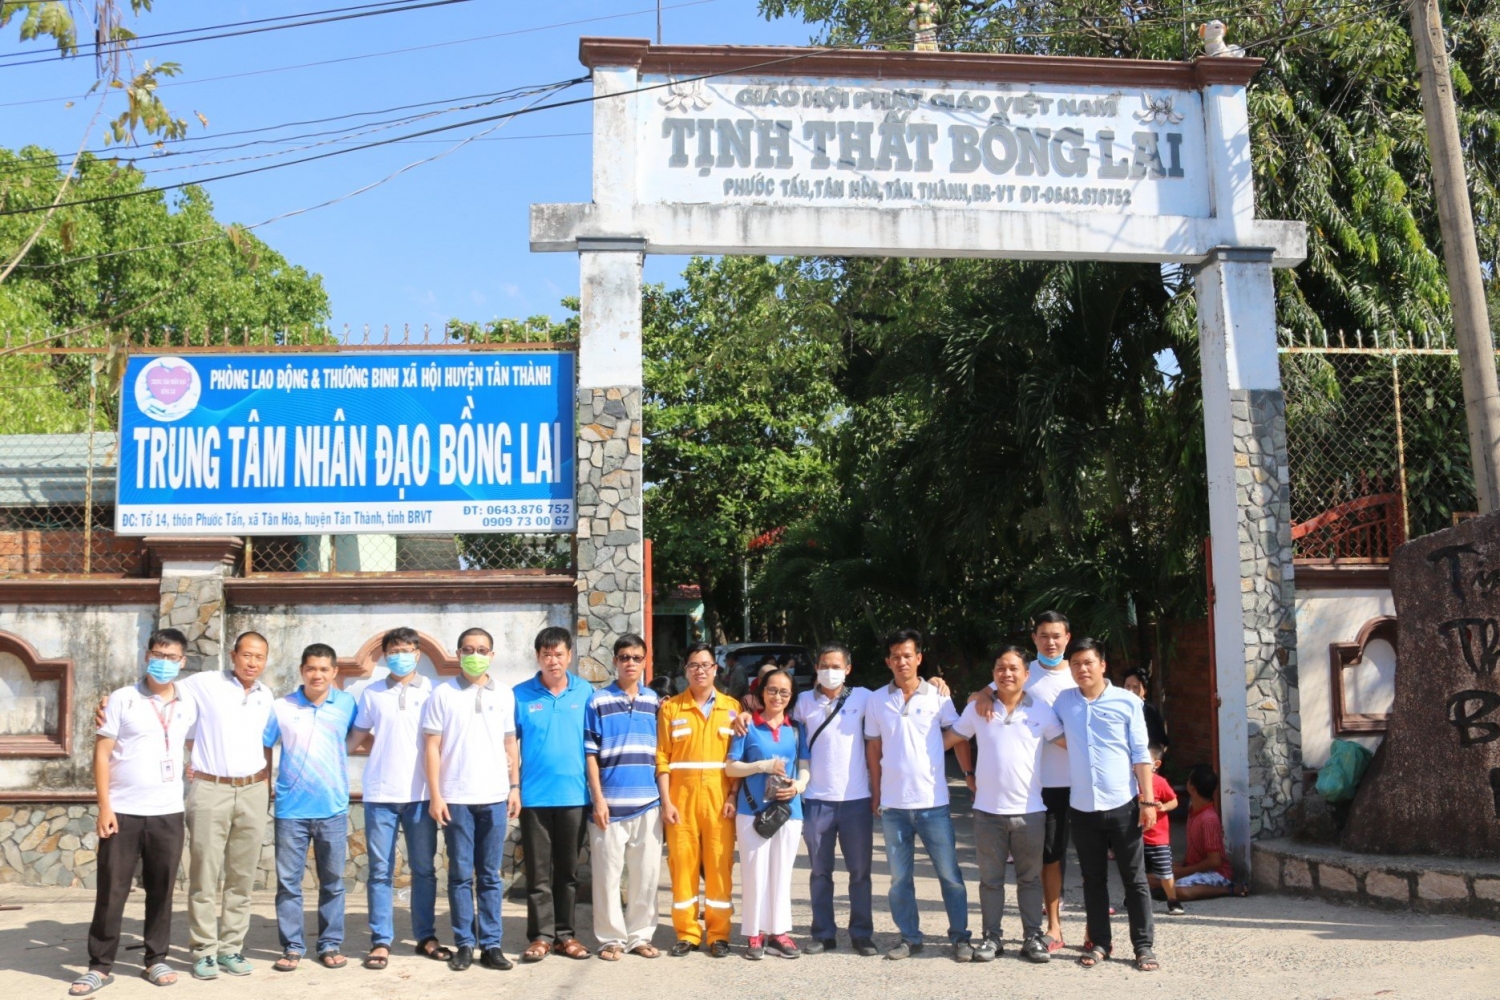 Hành trình yêu thương đến Trung tâm nhân đạo Bồng Lai